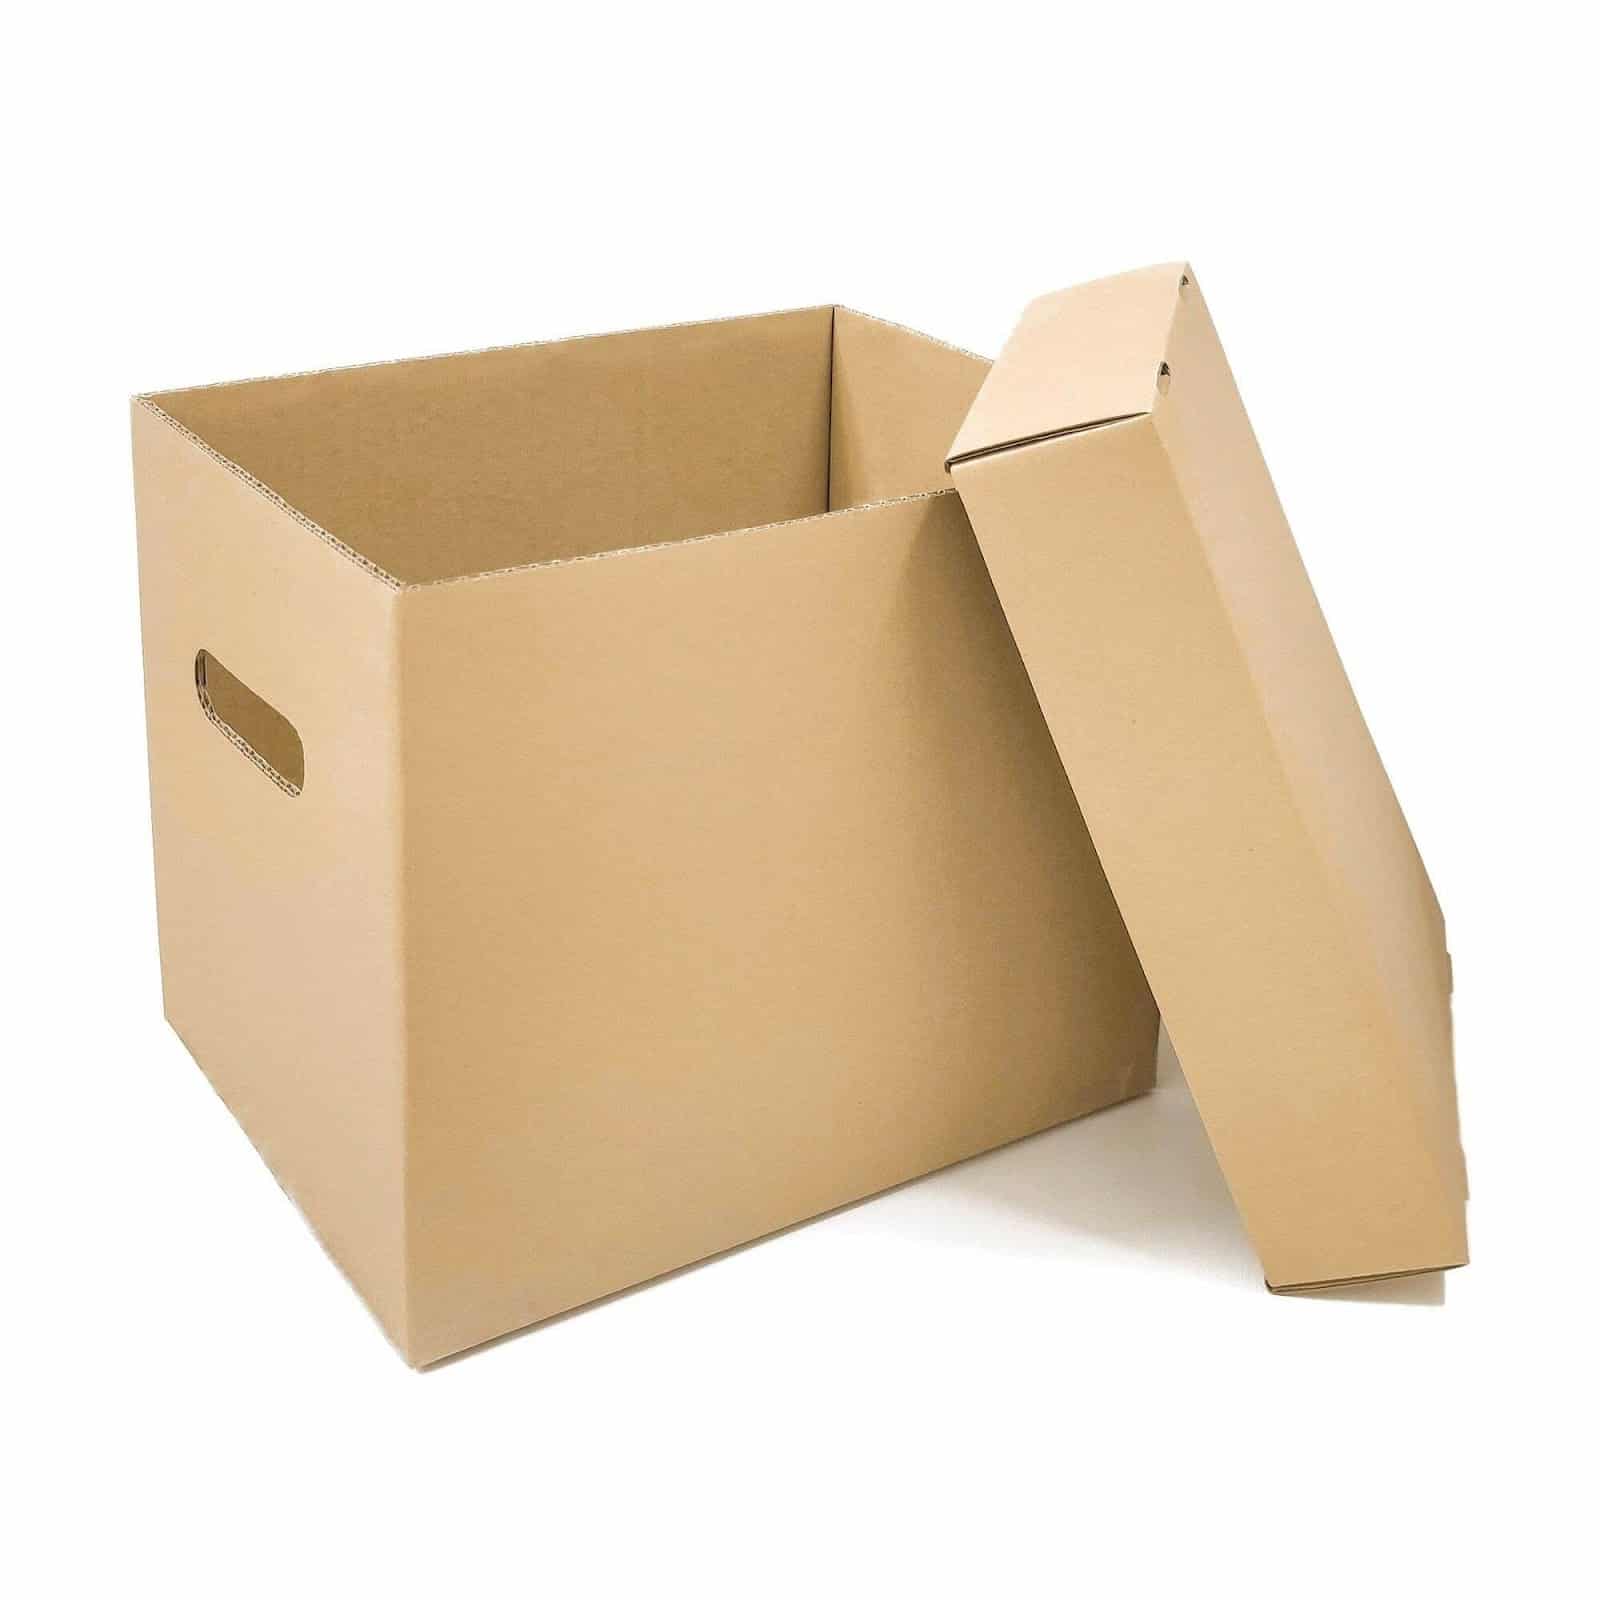 Thùng đựng tài liệu A4 bằng carton giá thành rẻ nhưng không sử dụng được lâu và dễ bị tác động từ môi trường.